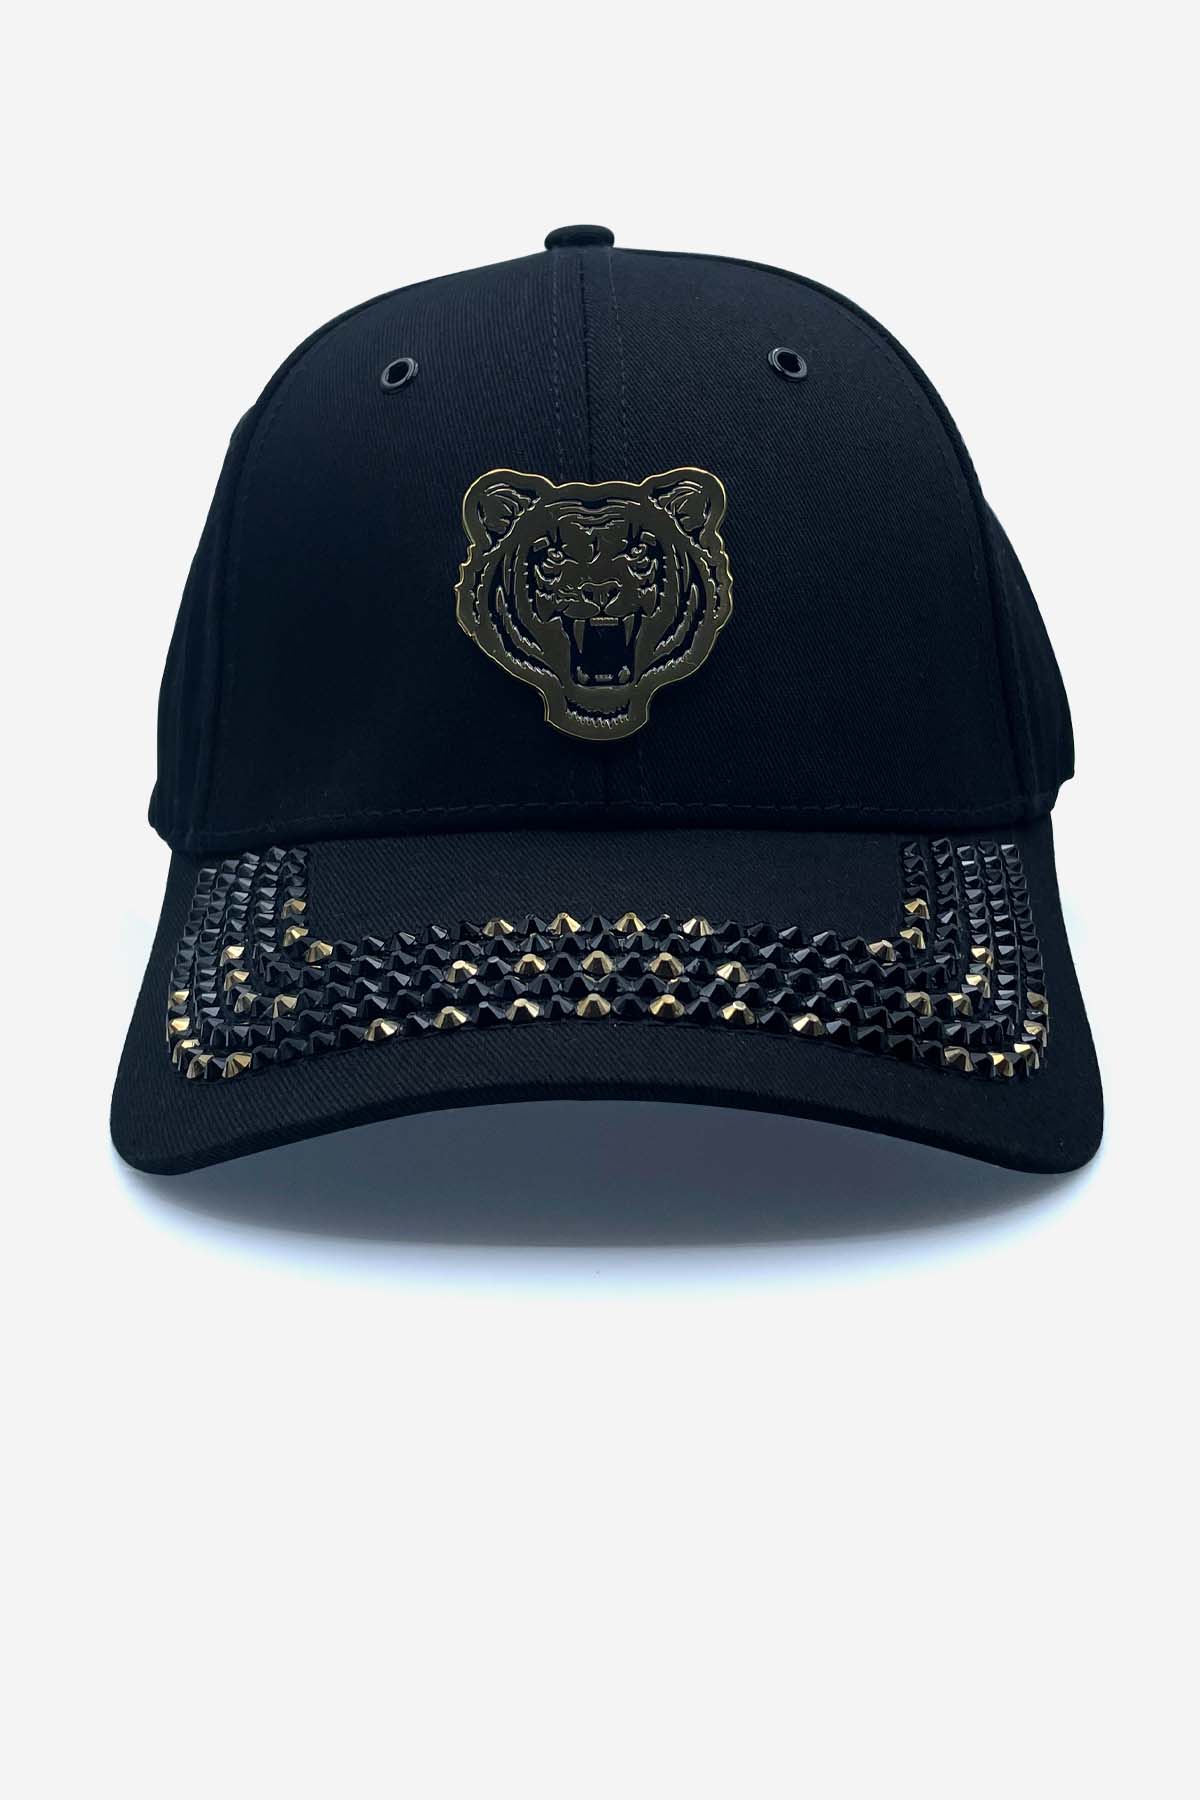 BLACK & GOLD SWAROVSKI CRYSTAL TIGER CAP